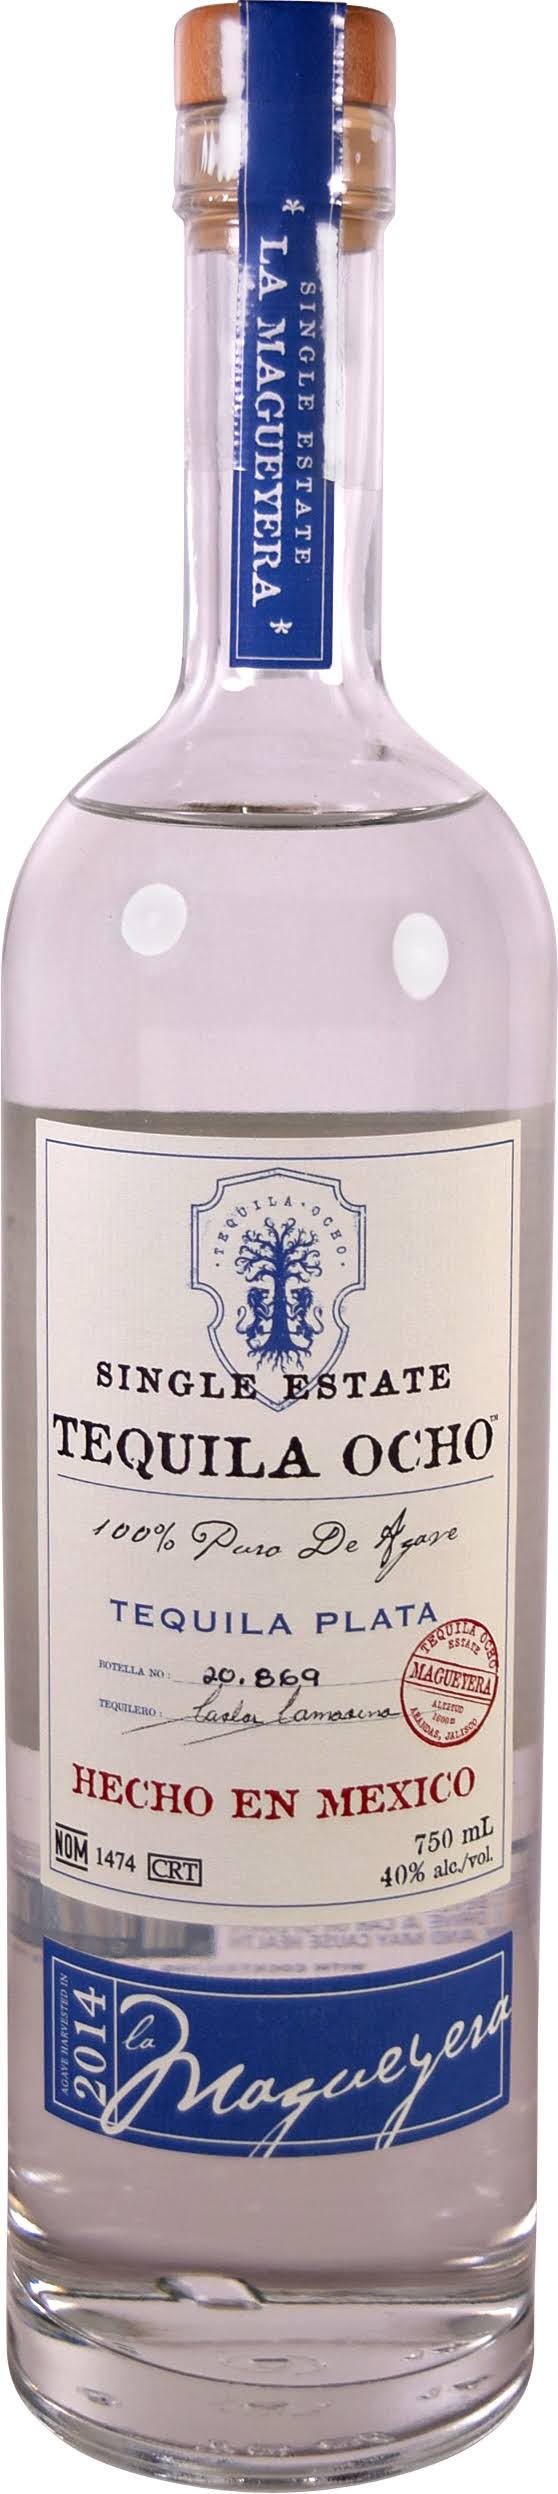 Tequila Ocho Plata Jalisco - 750 ml bottle